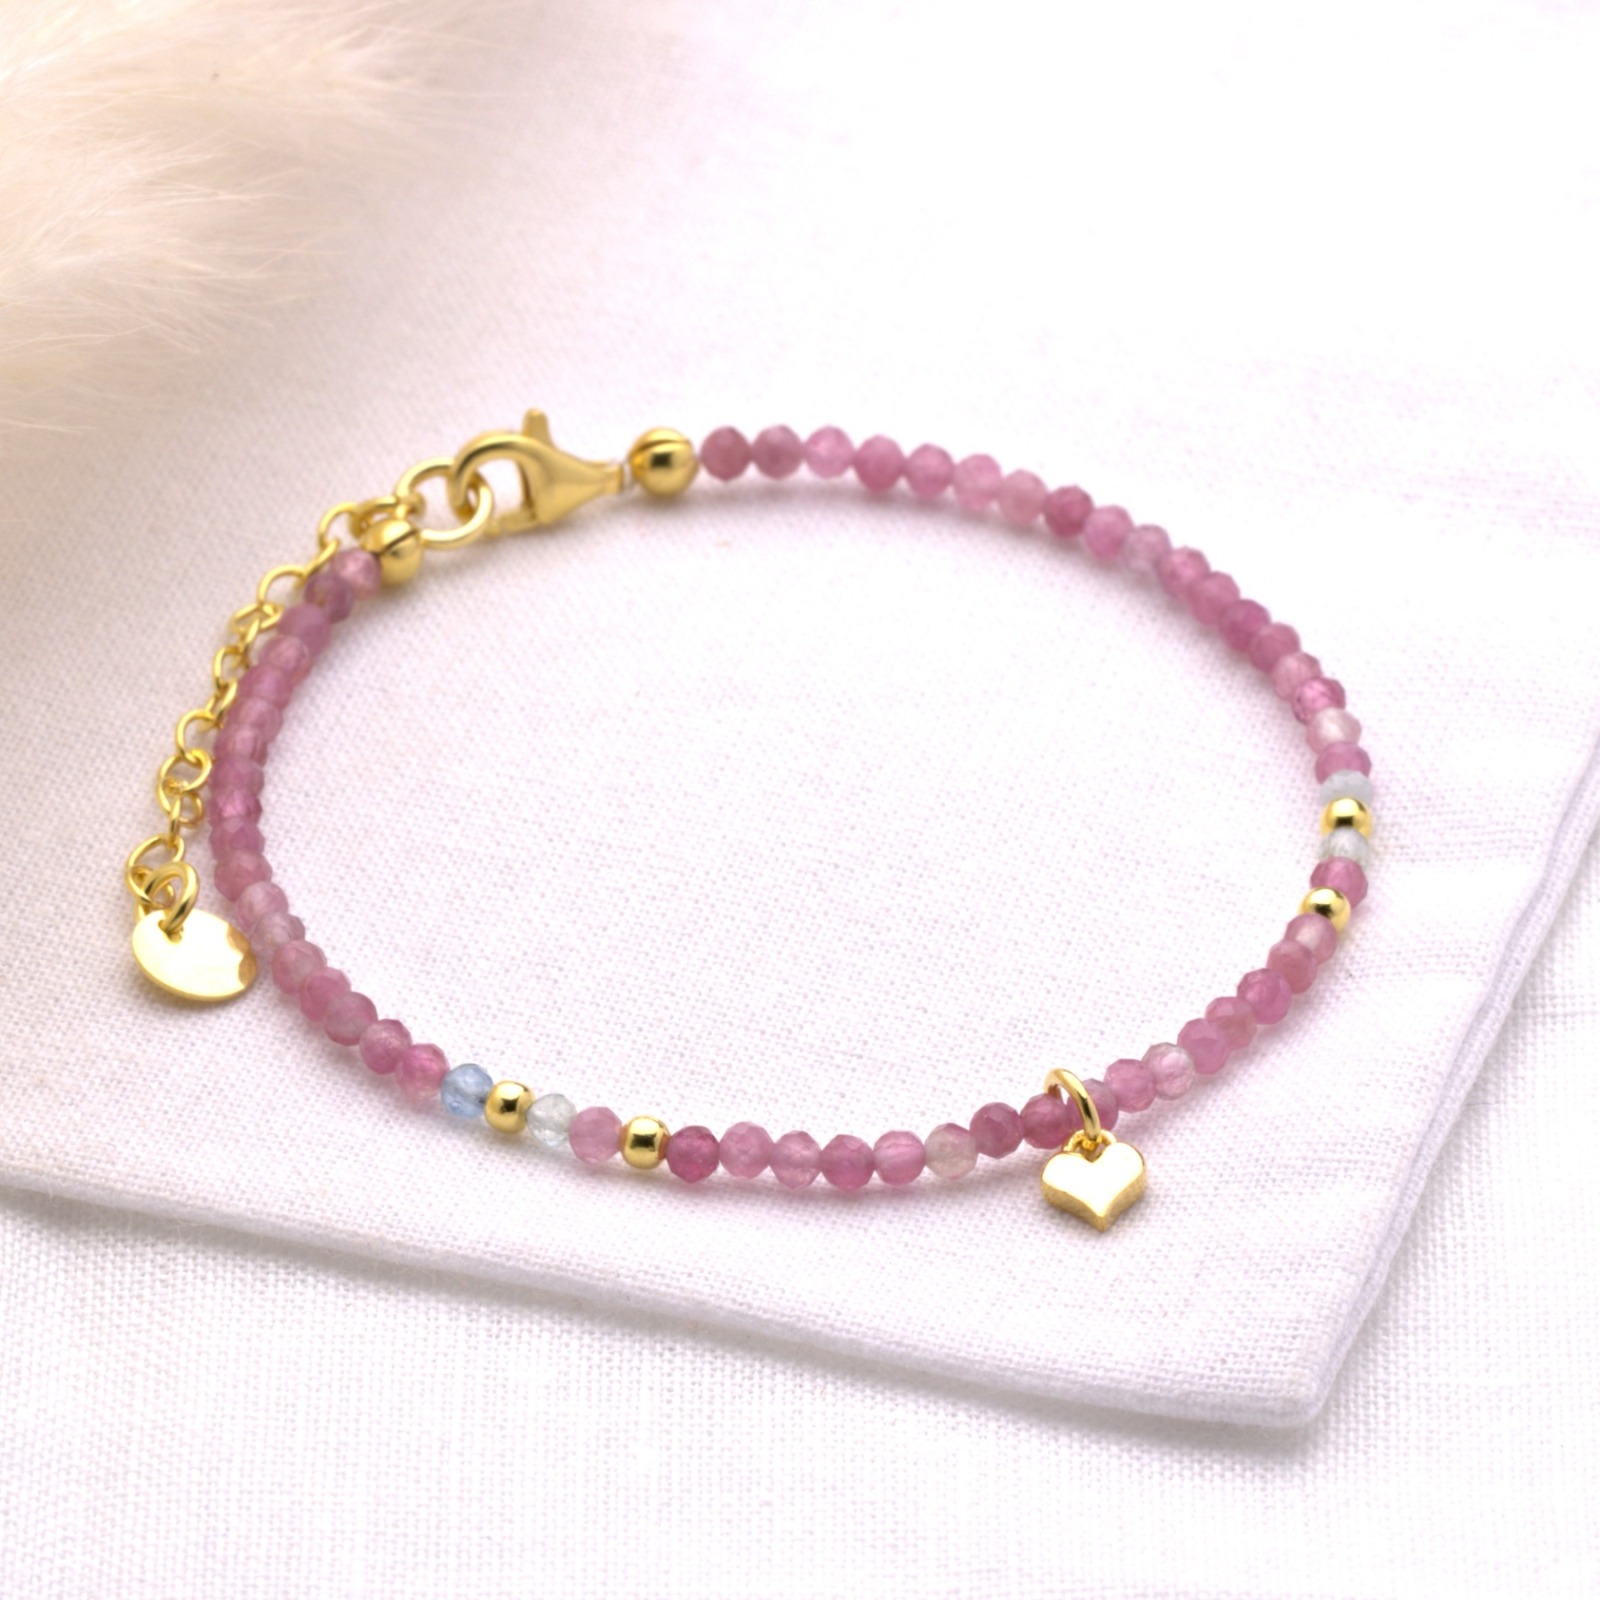 Filigranes Armband aus echtem pink Turmalin mit Aquamarin, mit einem zarten Herz - Silber oder